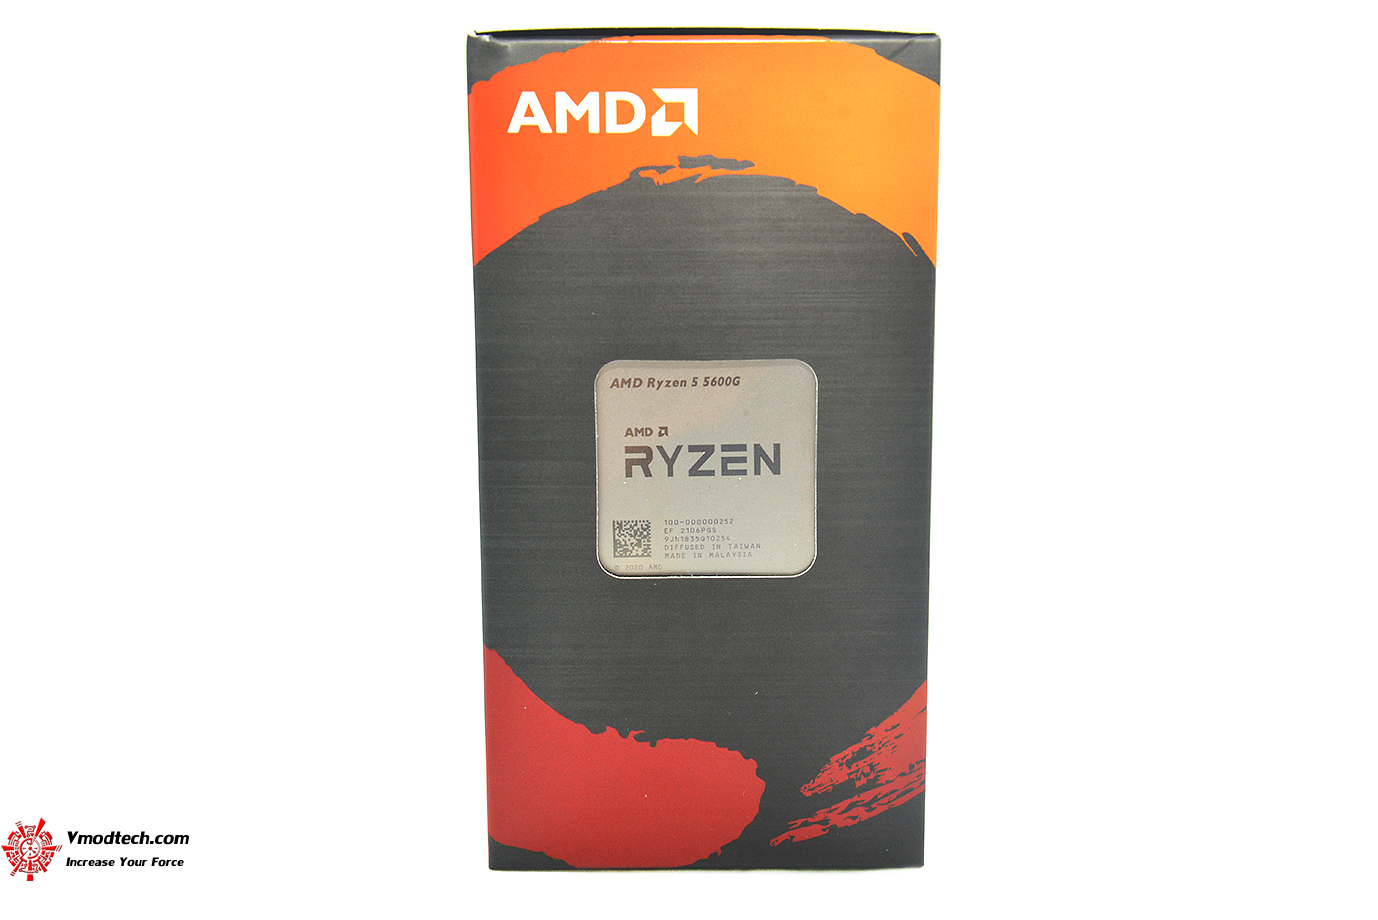 หน้าที่ 1 - AMD RYZEN 5 5600G PROCESSOR REVIEW | Vmodtech.com | Review